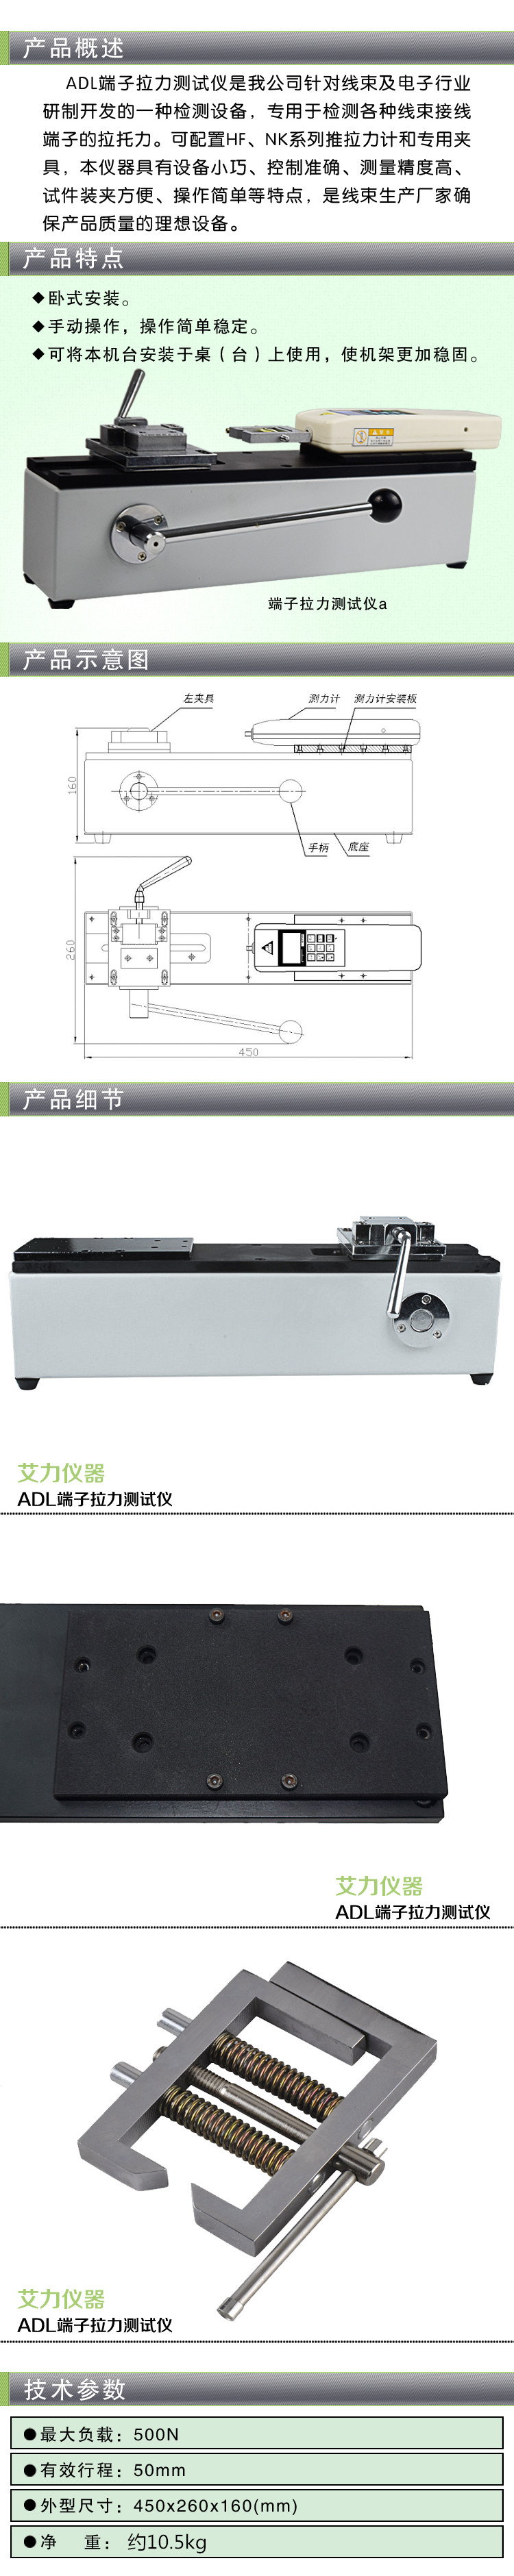 ADL端子拉力测试仪